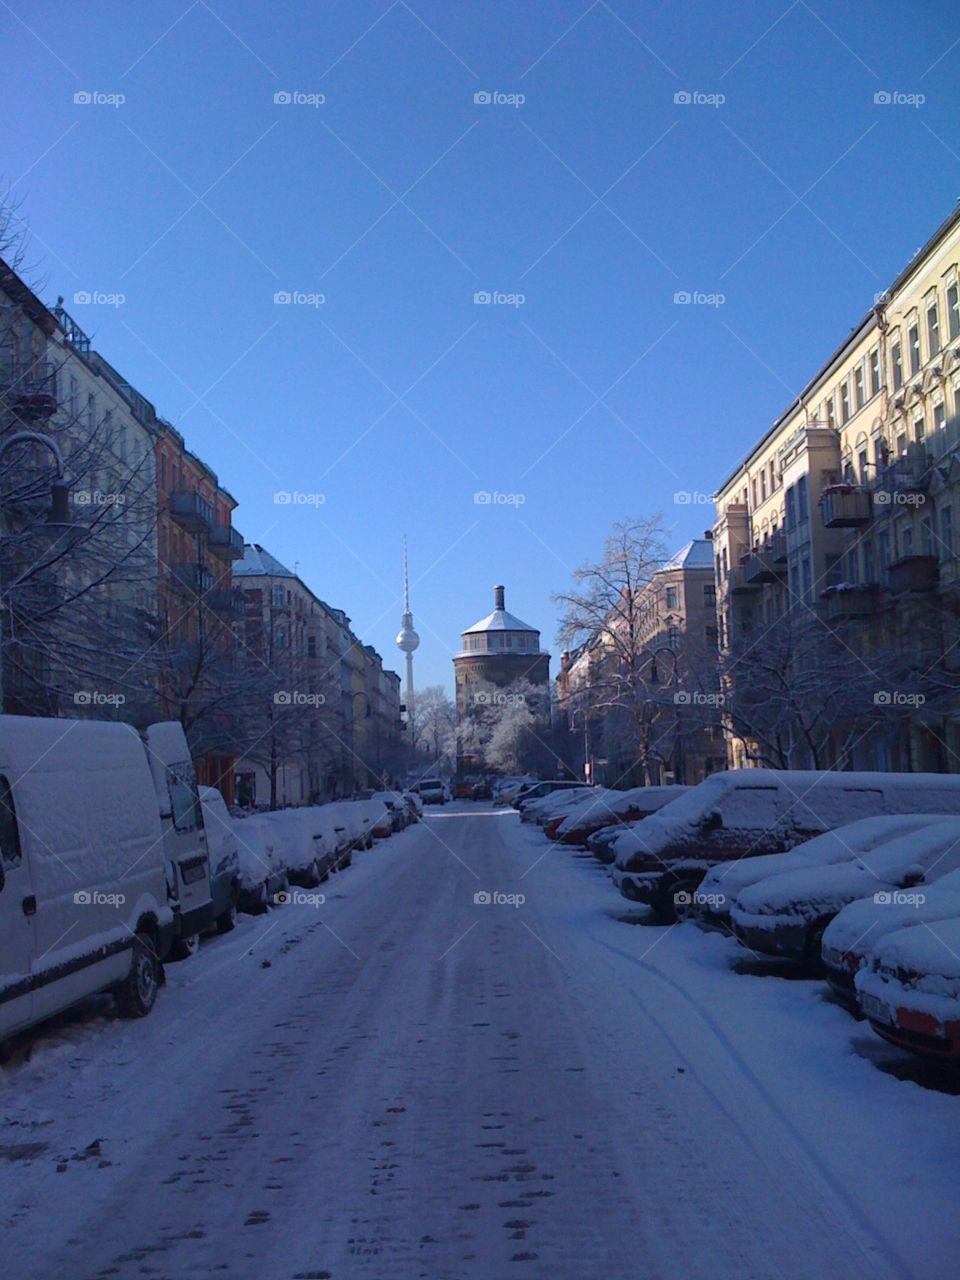 snow street berlin watertower by aflasbar